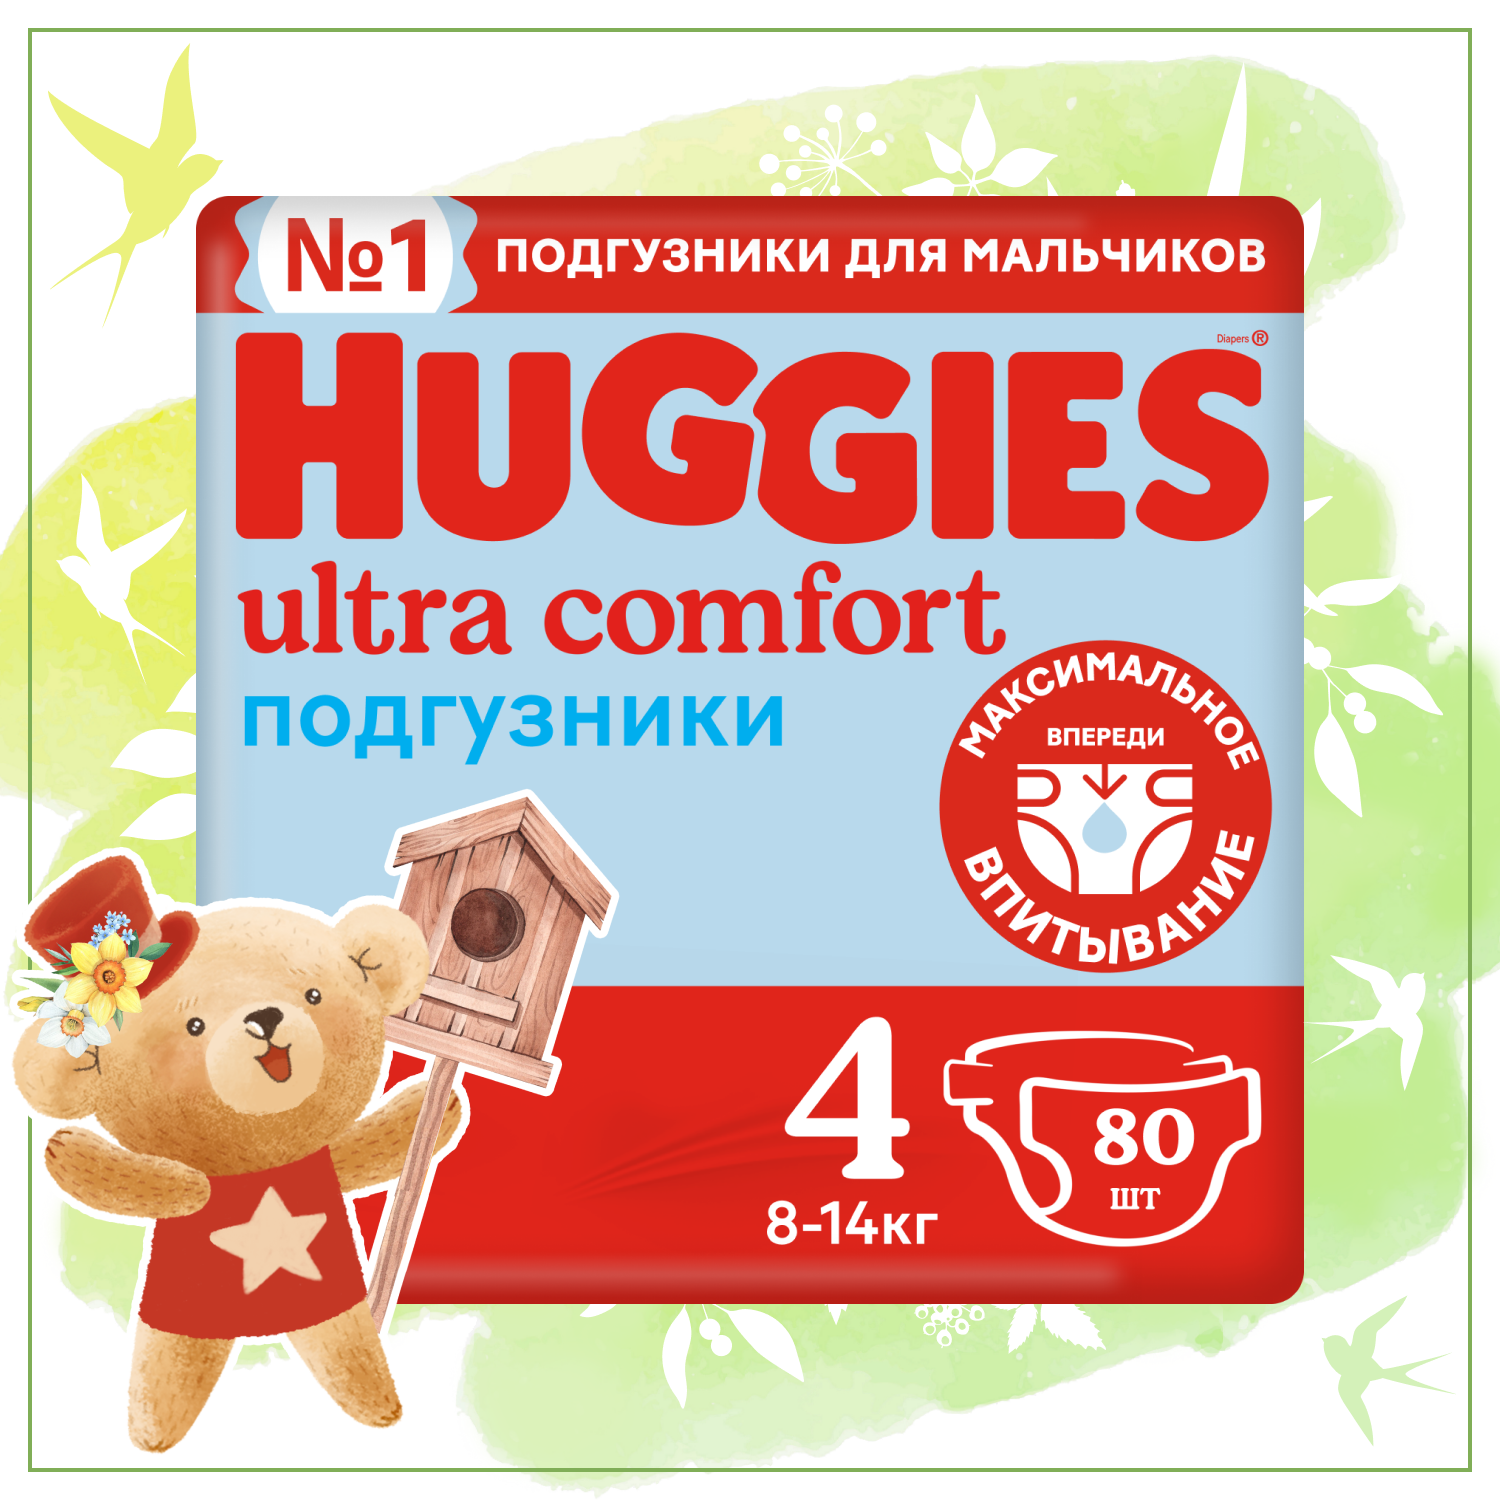 Подгузники для мальчиков Huggies Ultra Comfort 4 8-14кг 80шт - фото 1